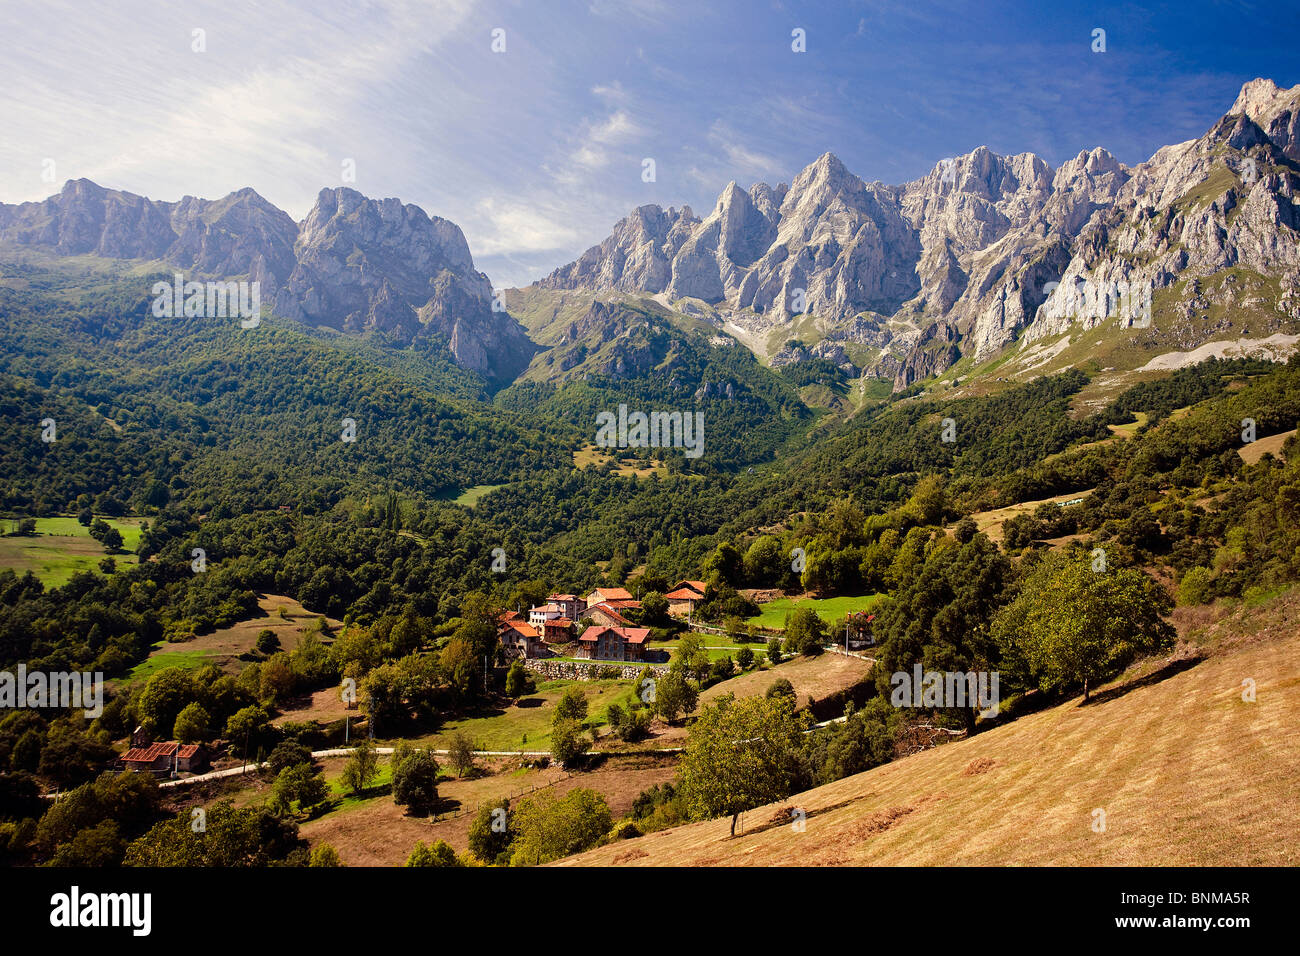 Spagna Cantabria Picos de Europa parco nazionale con pot Tanarrio villaggio vacanze montagna corsa, Foto Stock